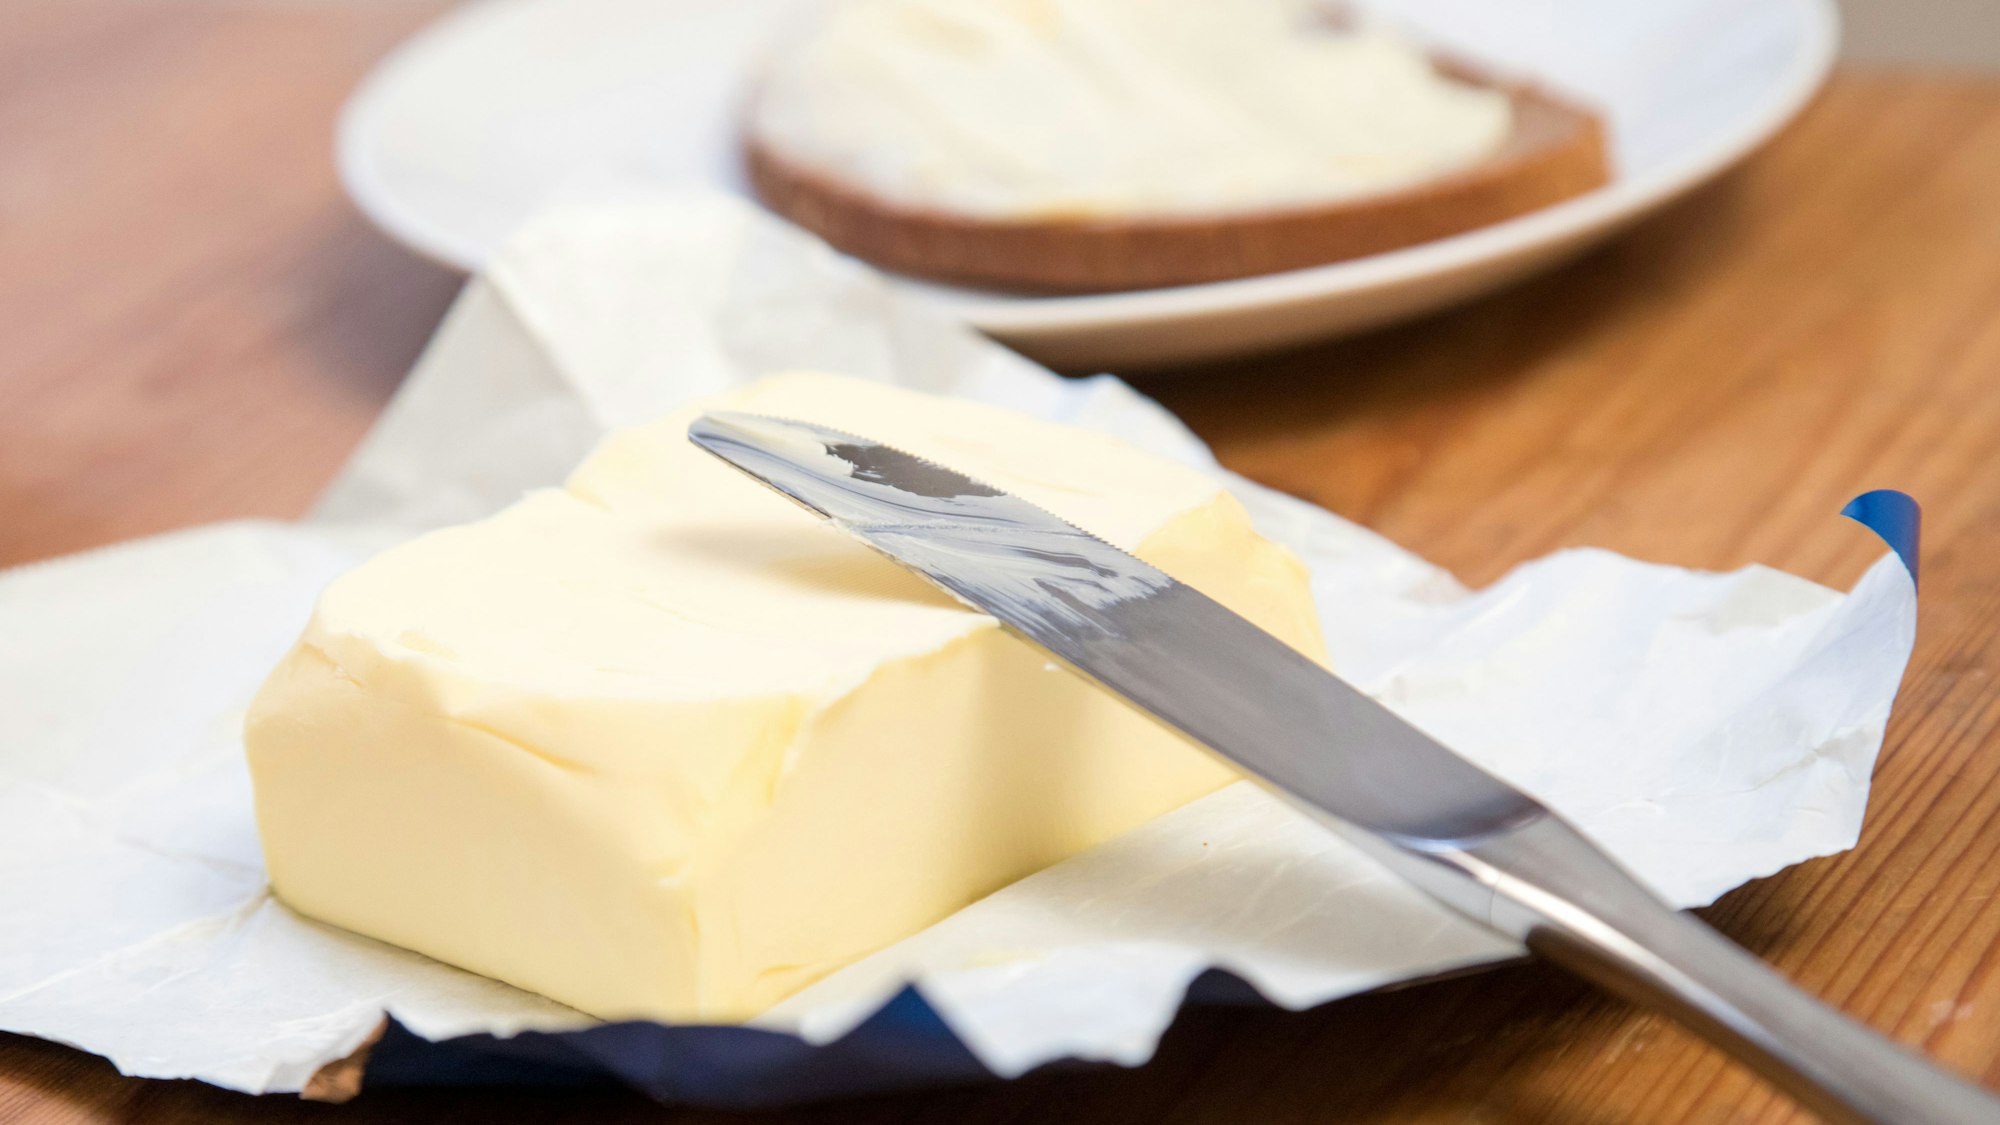 Die Lebensmittelpreise steigen 2021: Nun soll wohl auch Butter teurer werden. Doch was ist der Grund? Unser Symbolbild wurde 2019 aufgenommen.